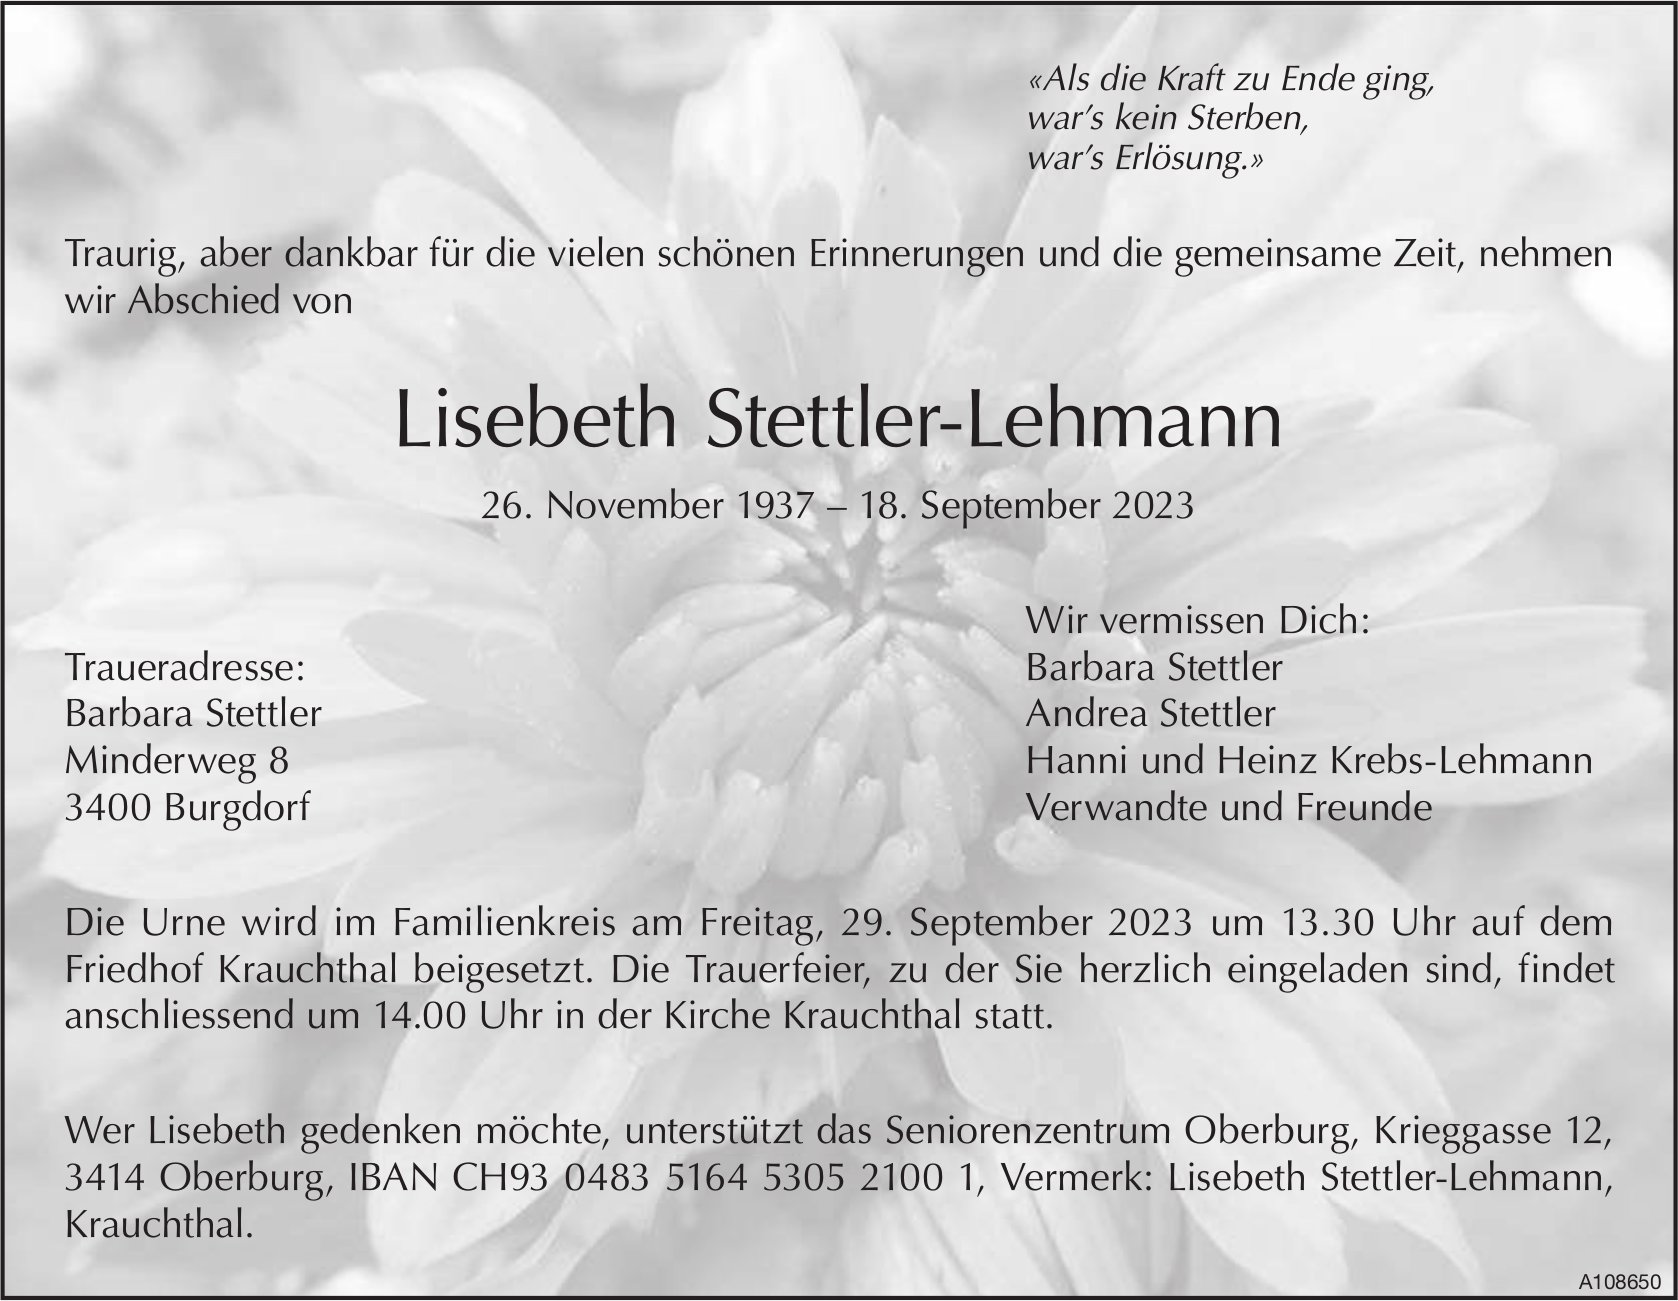 Lisebeth Stettler-Lehmann, September 2023 / TA